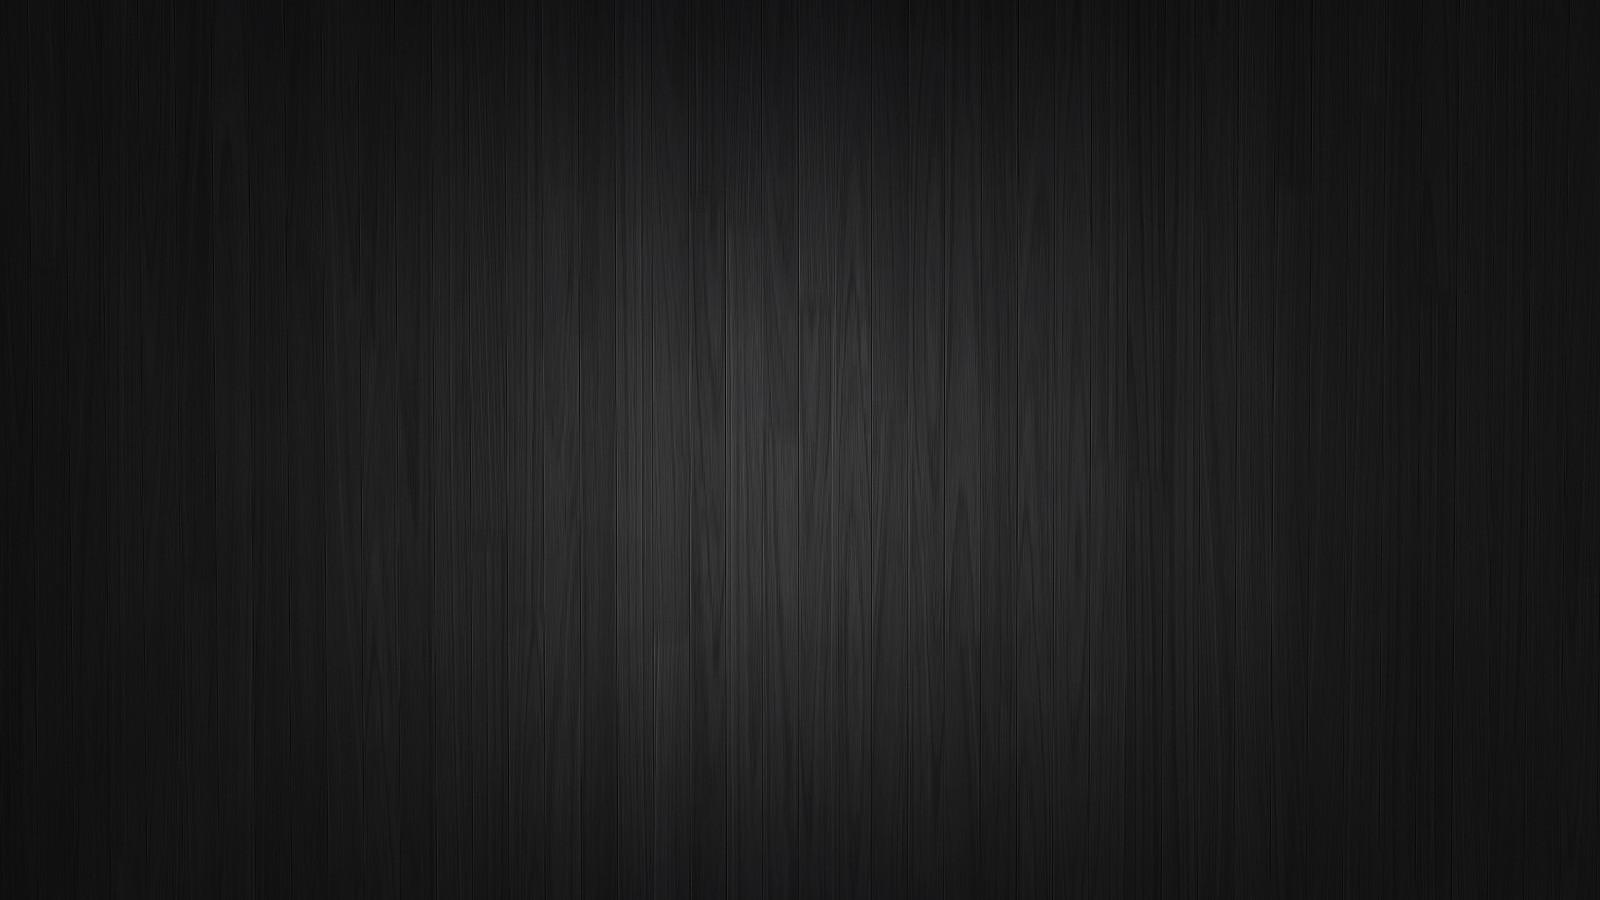 Hình nền đen 1600x900 - Hãy khám phá hình nền đen 1600x900 tuyệt đẹp, đem lại phong cách tinh tế cho màn hình của bạn. Với độ phân giải cực kỳ rõ nét, bạn sẽ không hối tiếc khi chiêm ngưỡng vẻ đẹp đầy mê hoặc của các hình nền đen này.